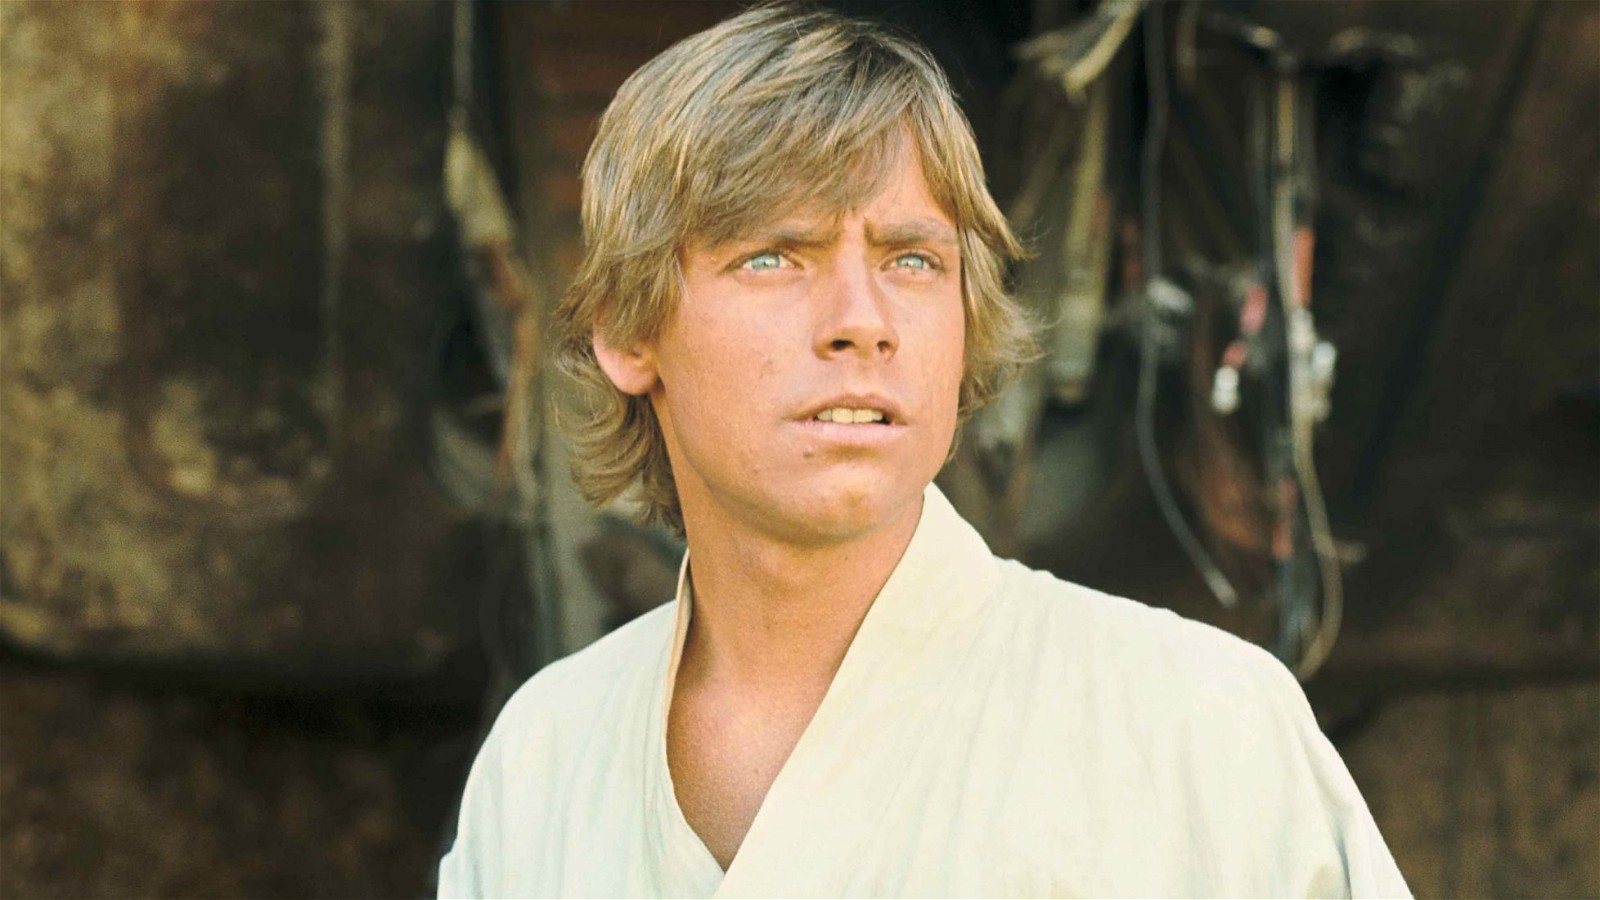 Mark Hamill as Luke Skywalker in Star Wars: A New Hope